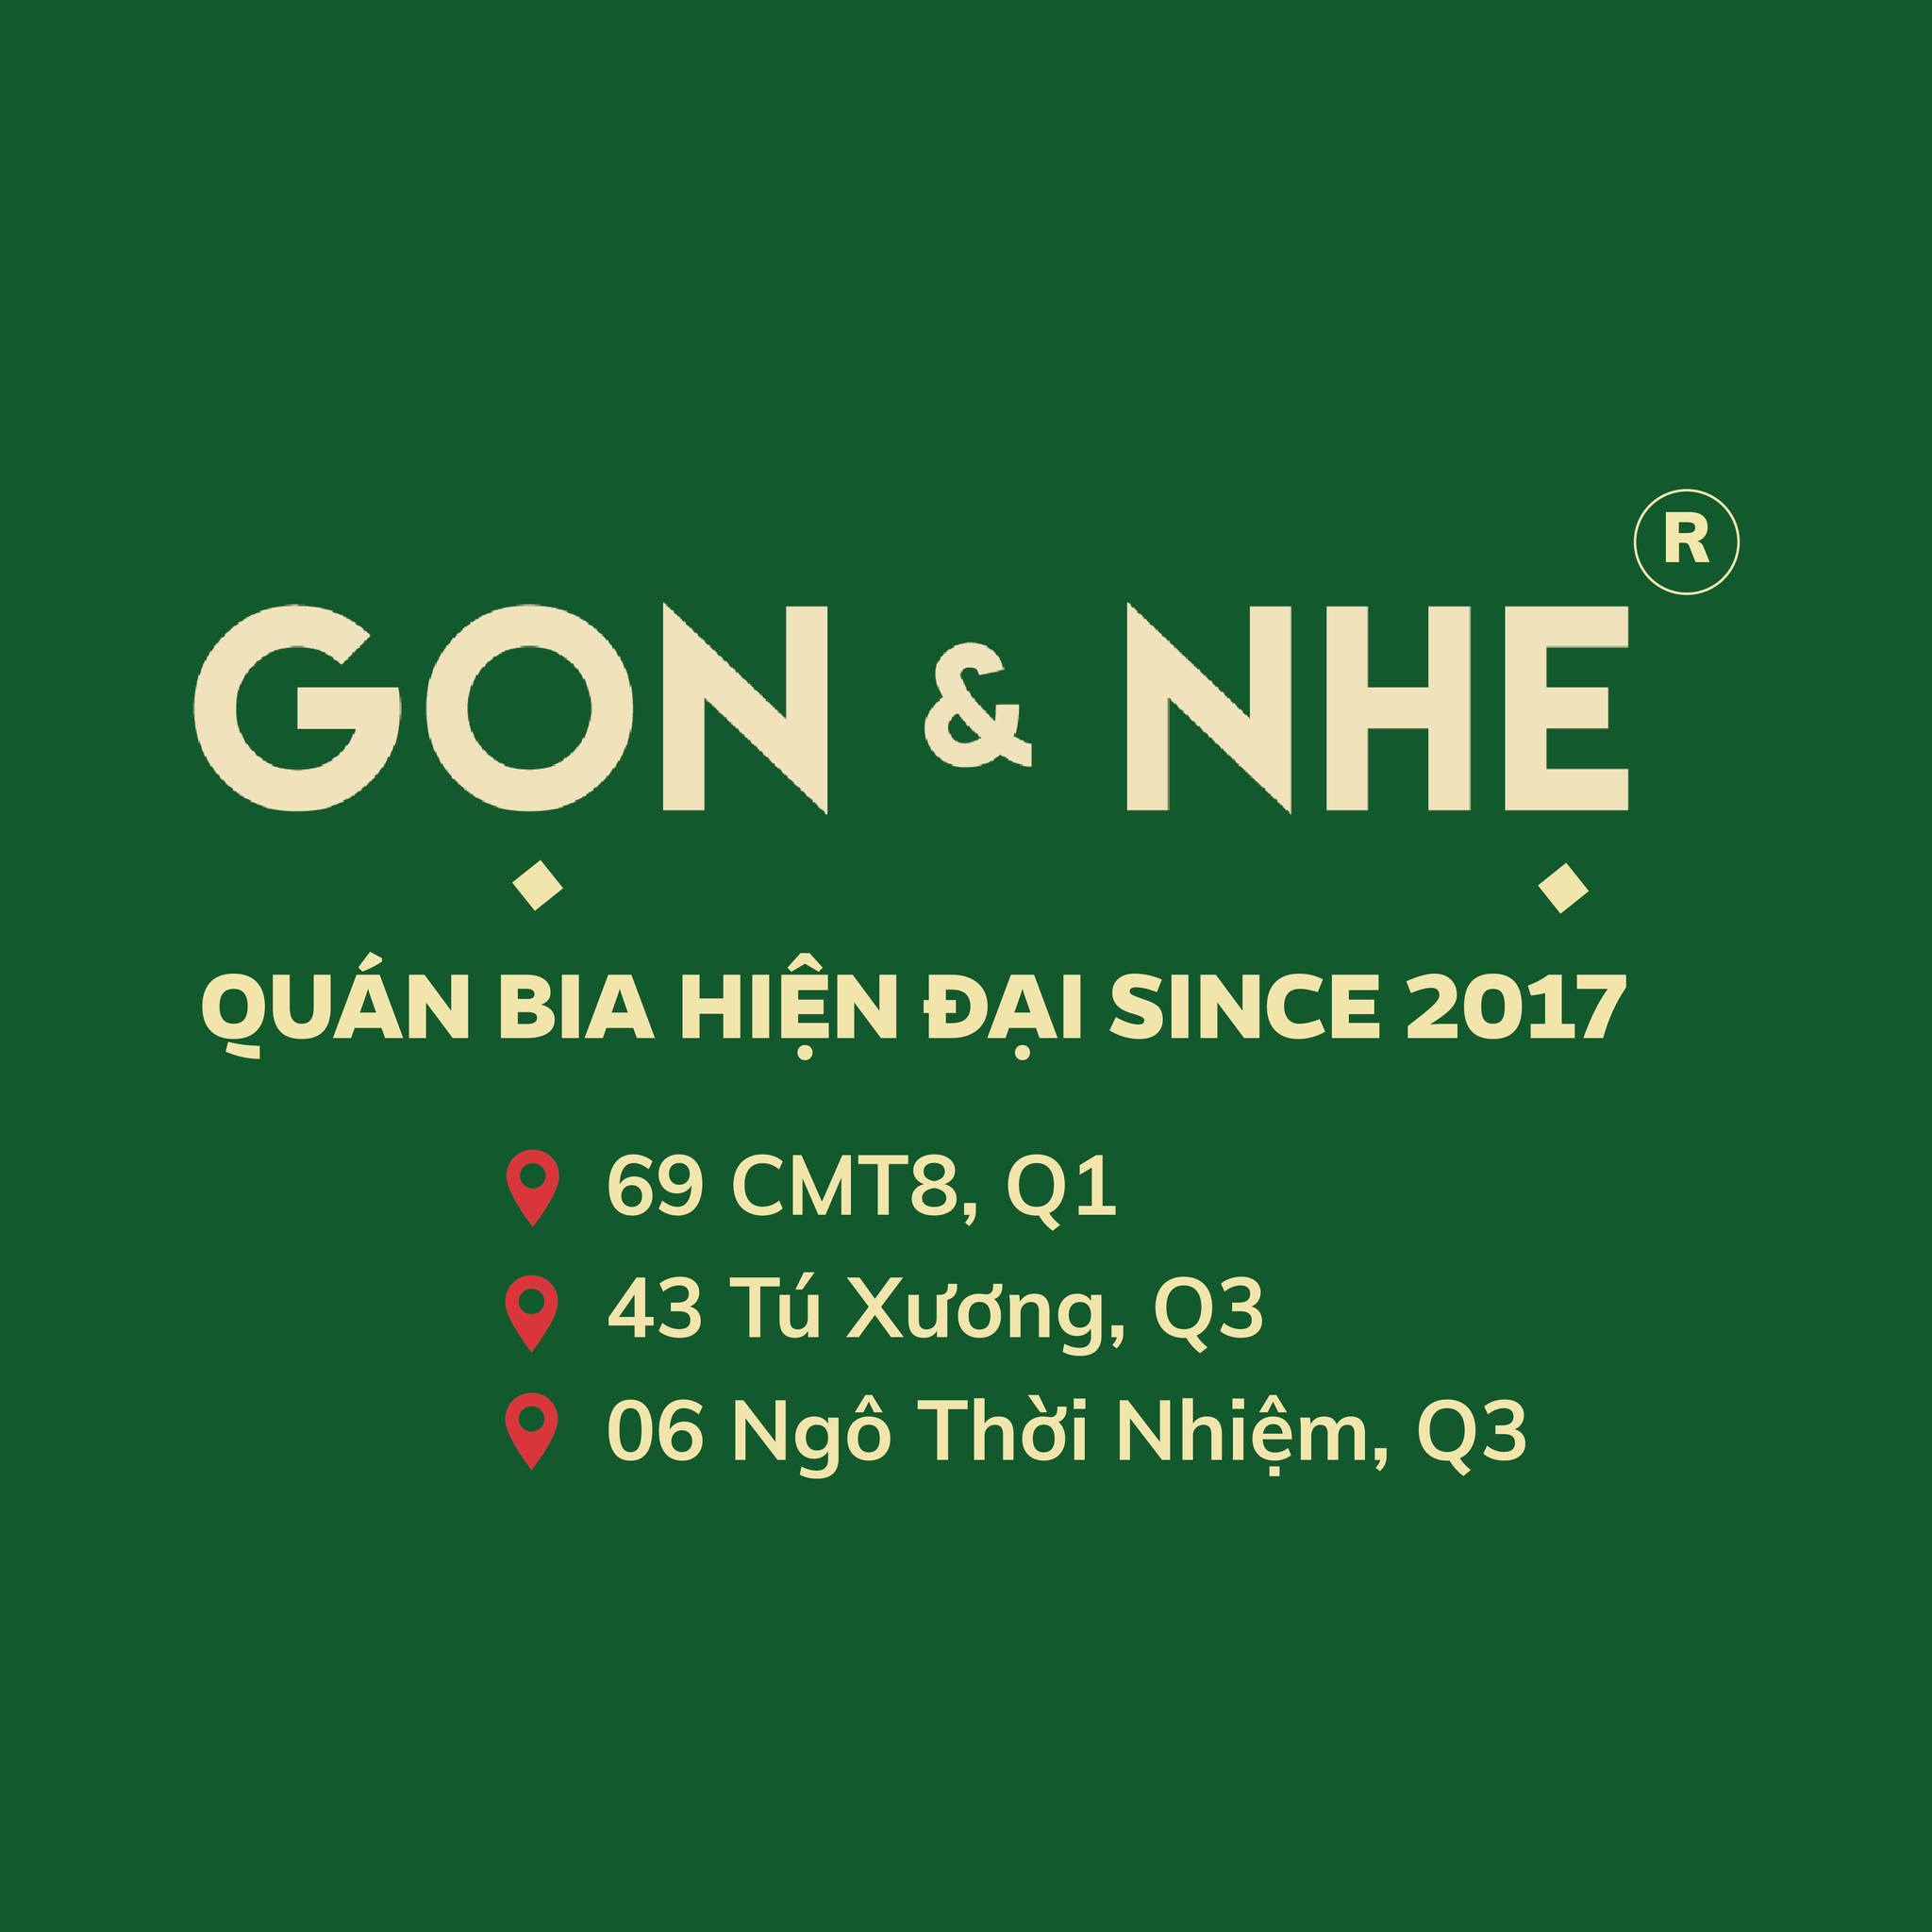 Top 40 danh sách các món ngon ngày Tết Việt Nam 3 miền (phần 1)